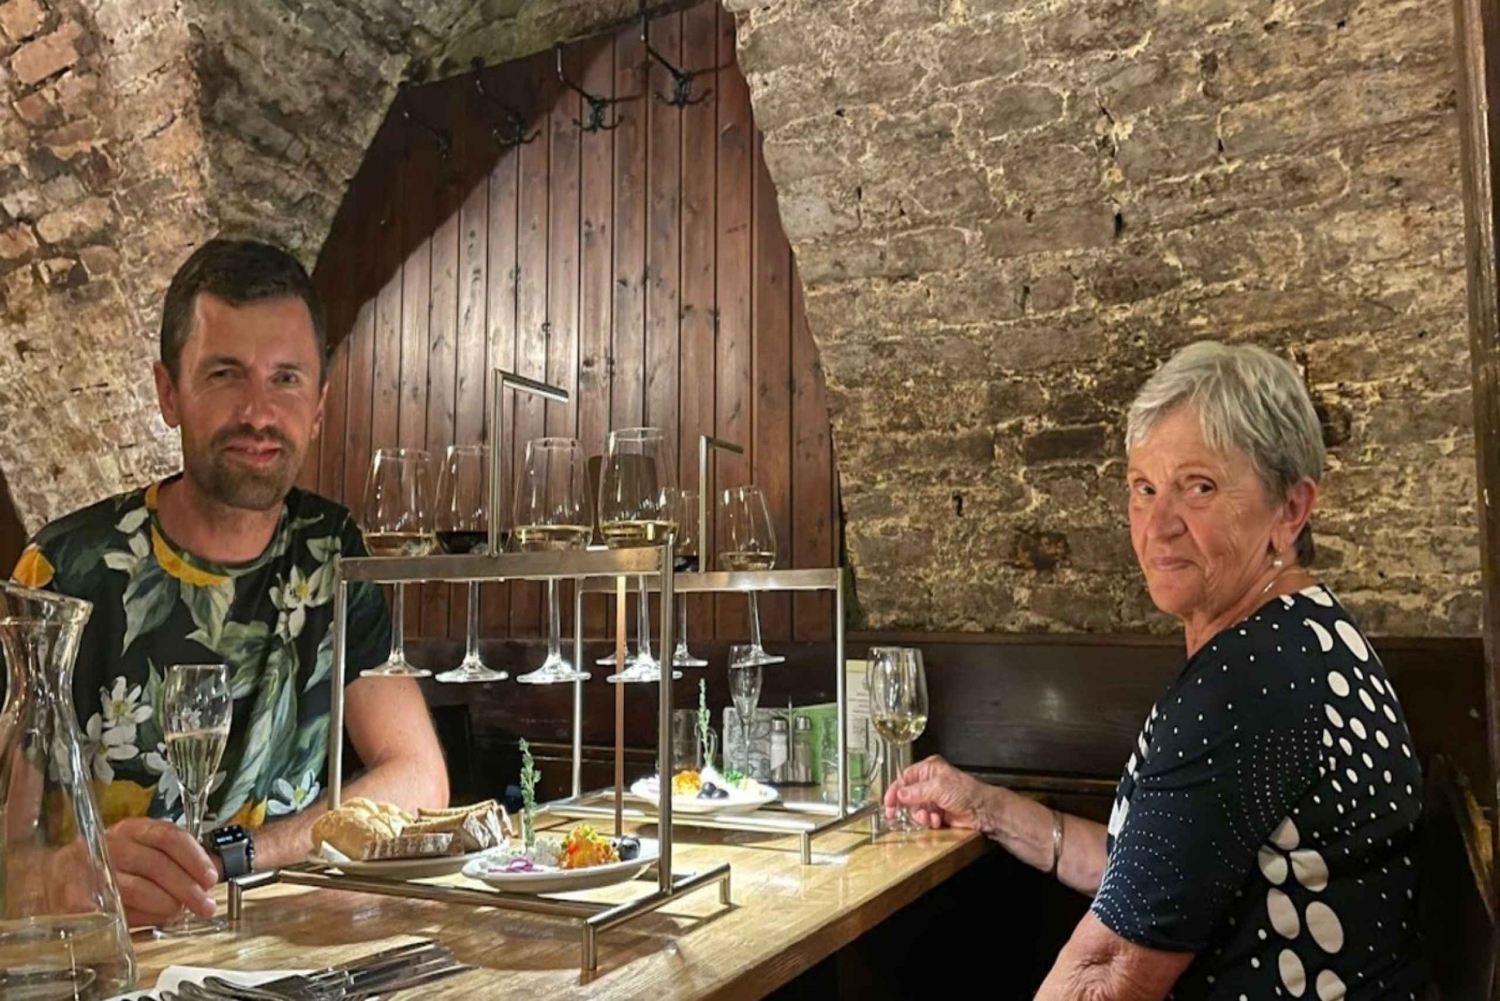 Wenen: wijnproeverij in traditionele kelder